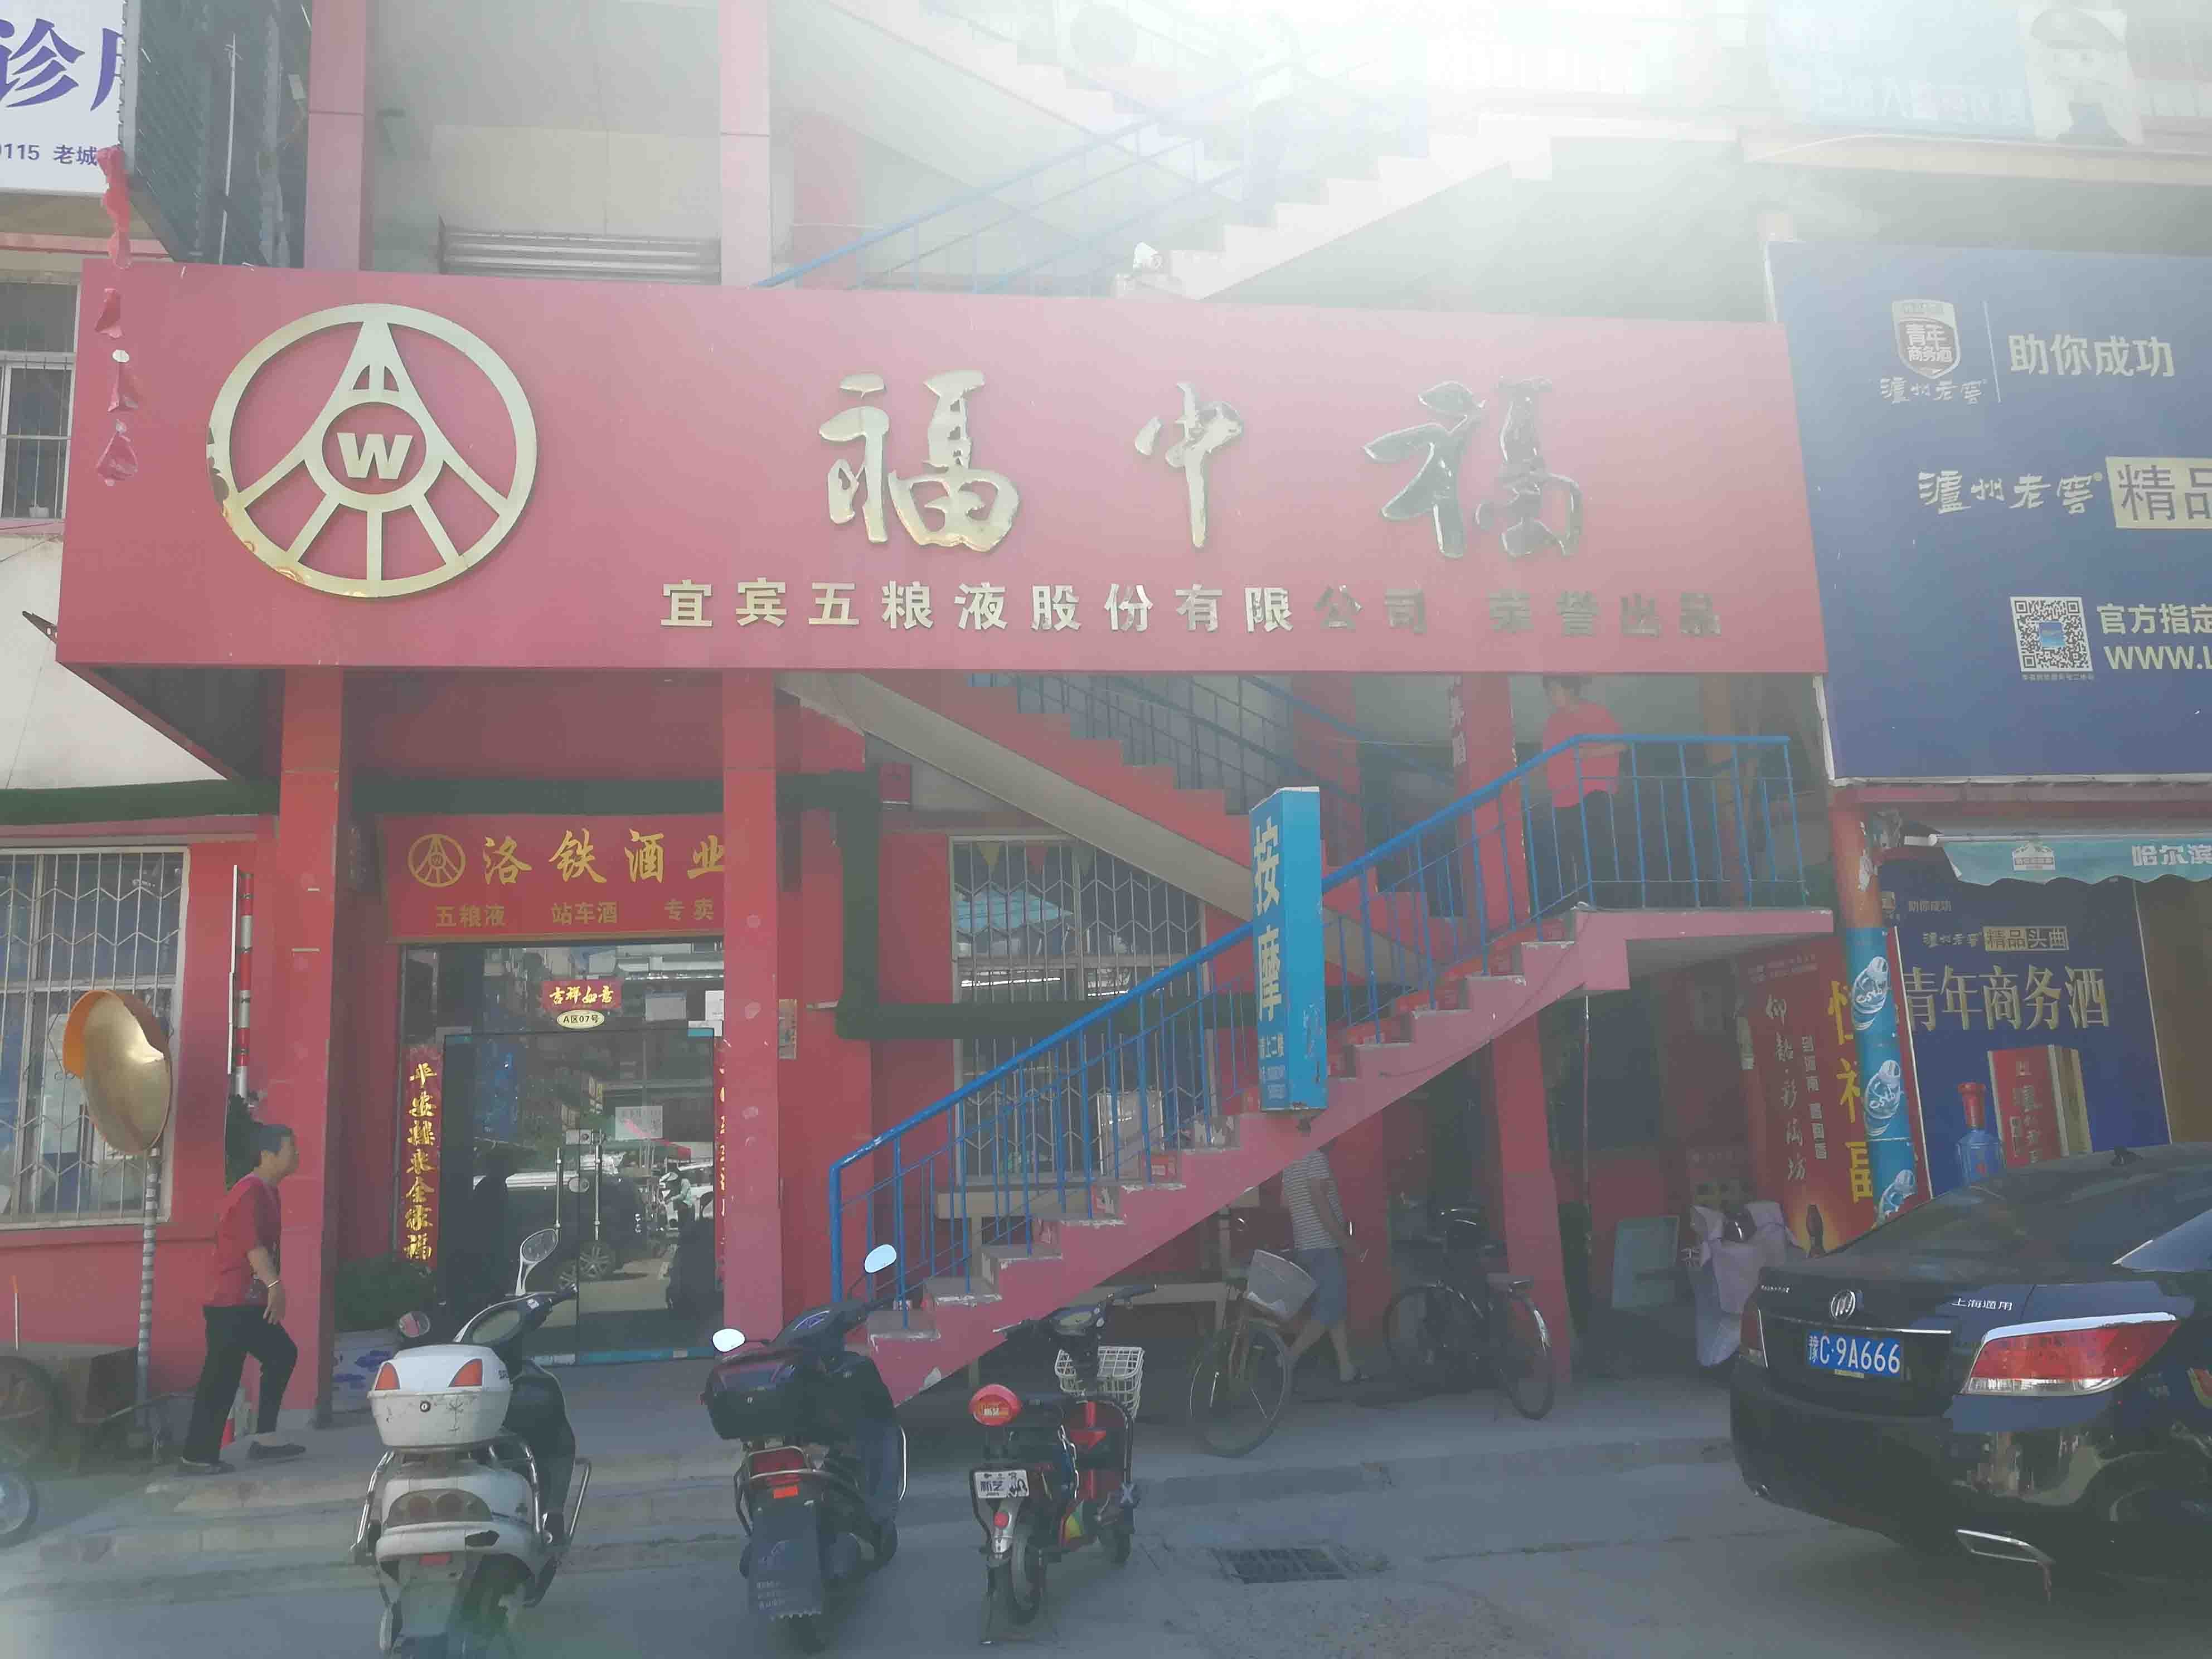 武汉南路洛阳商业地产出租服务，提供舞蹈的商铺和写字楼选项。无论您是企业还是成熟企业，我们的列表都能满足您的需求